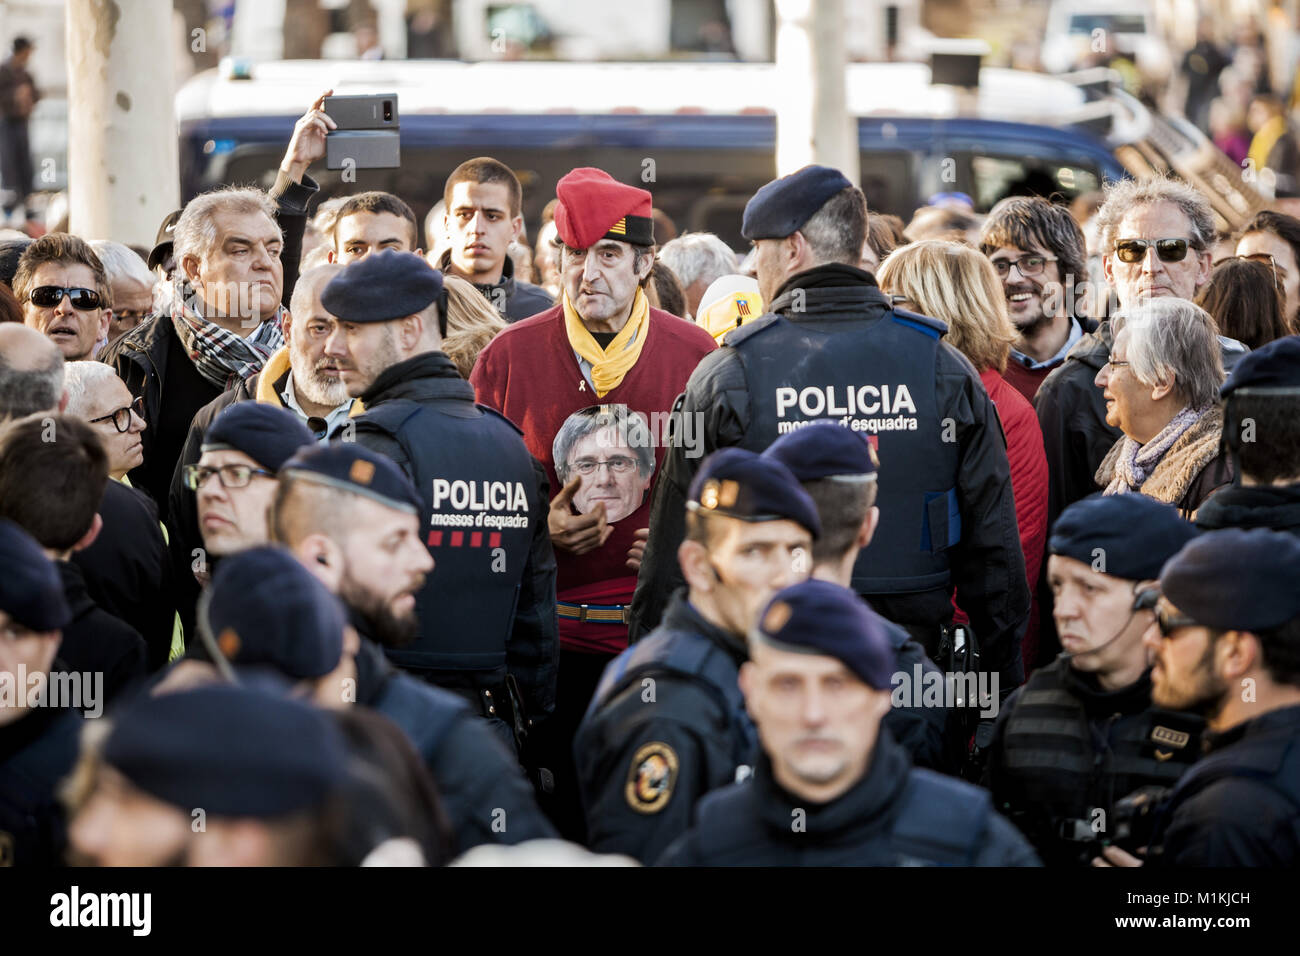 Barcelone, Catalogne, Espagne. 30Th Jan, 2018. Les contrôles de police des participants d'une manifestation indépendantiste quand ils essaient d'entrer au Parlement de Catalogne au cours d'une session d'investiture : Crédit Celestino Arce/ZUMA/Alamy Fil Live News Banque D'Images